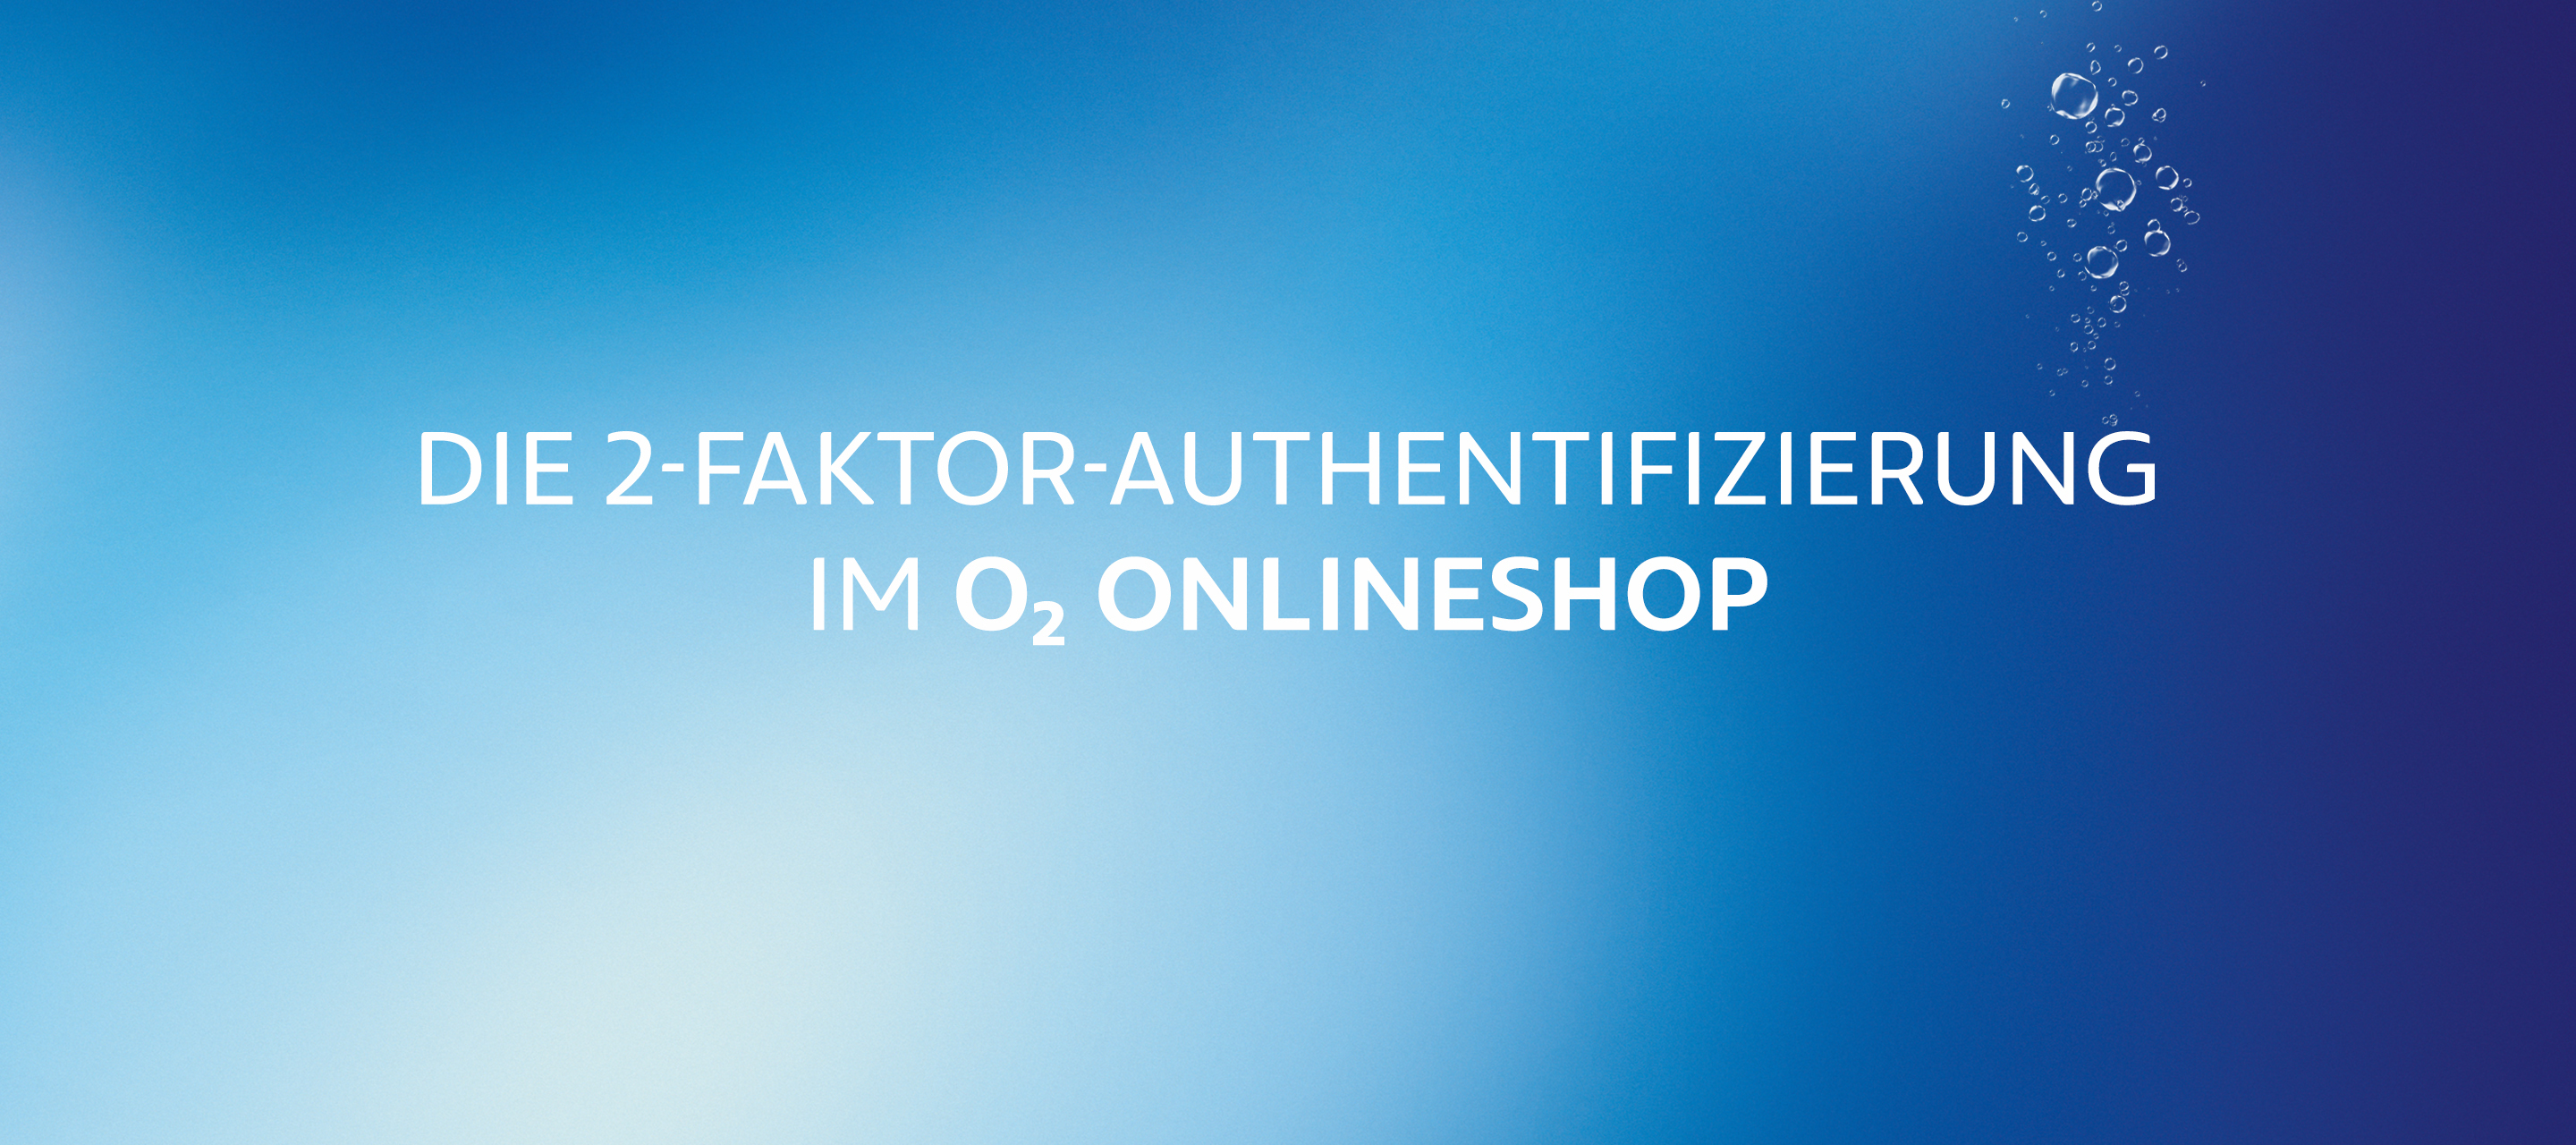 Die 2-Faktor-Authentifizierung im O₂ Onlineshop